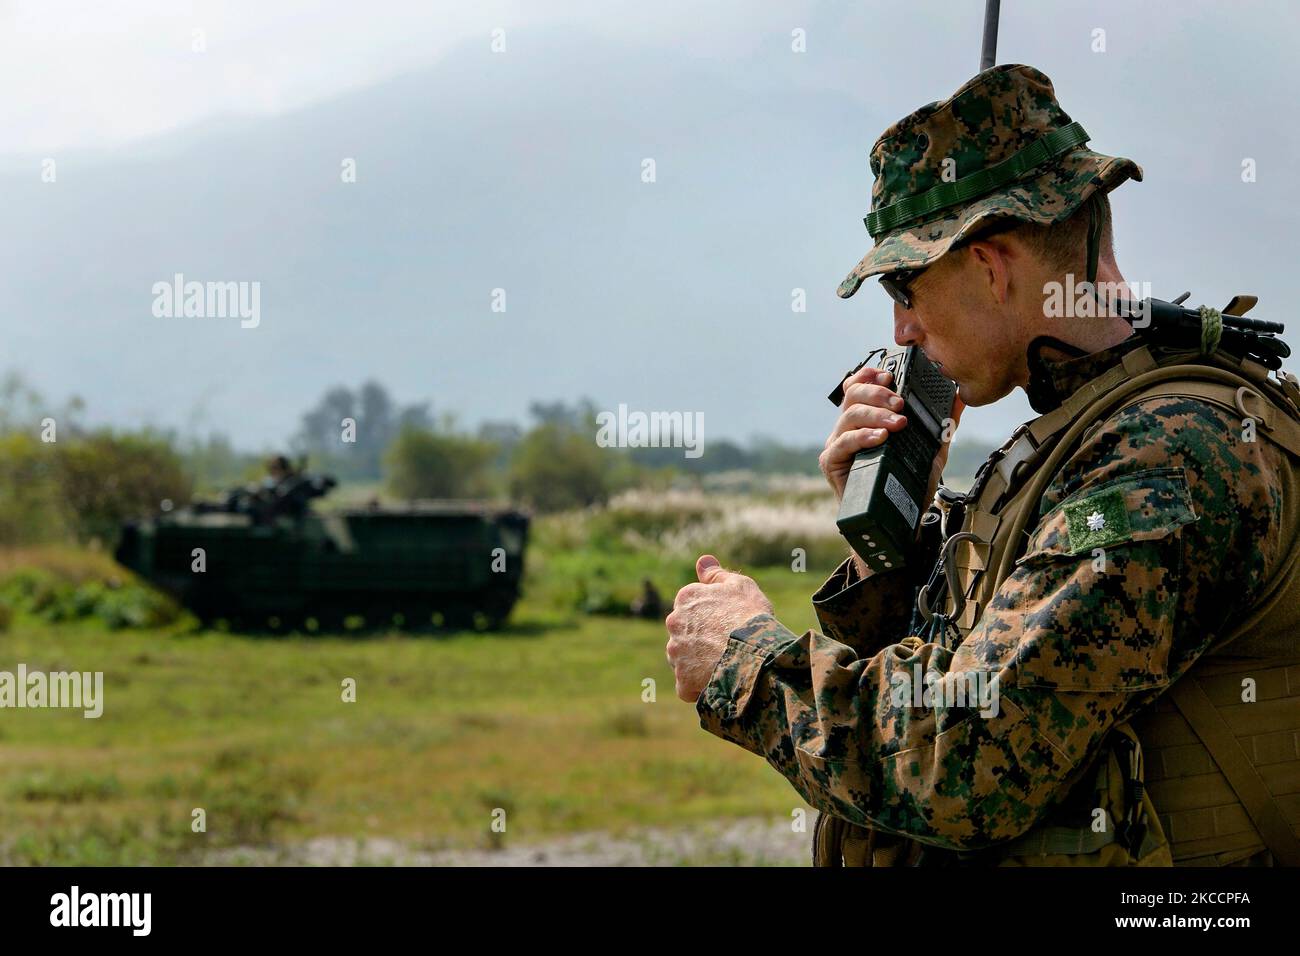 U.S. Marine checks communications. Stock Photo